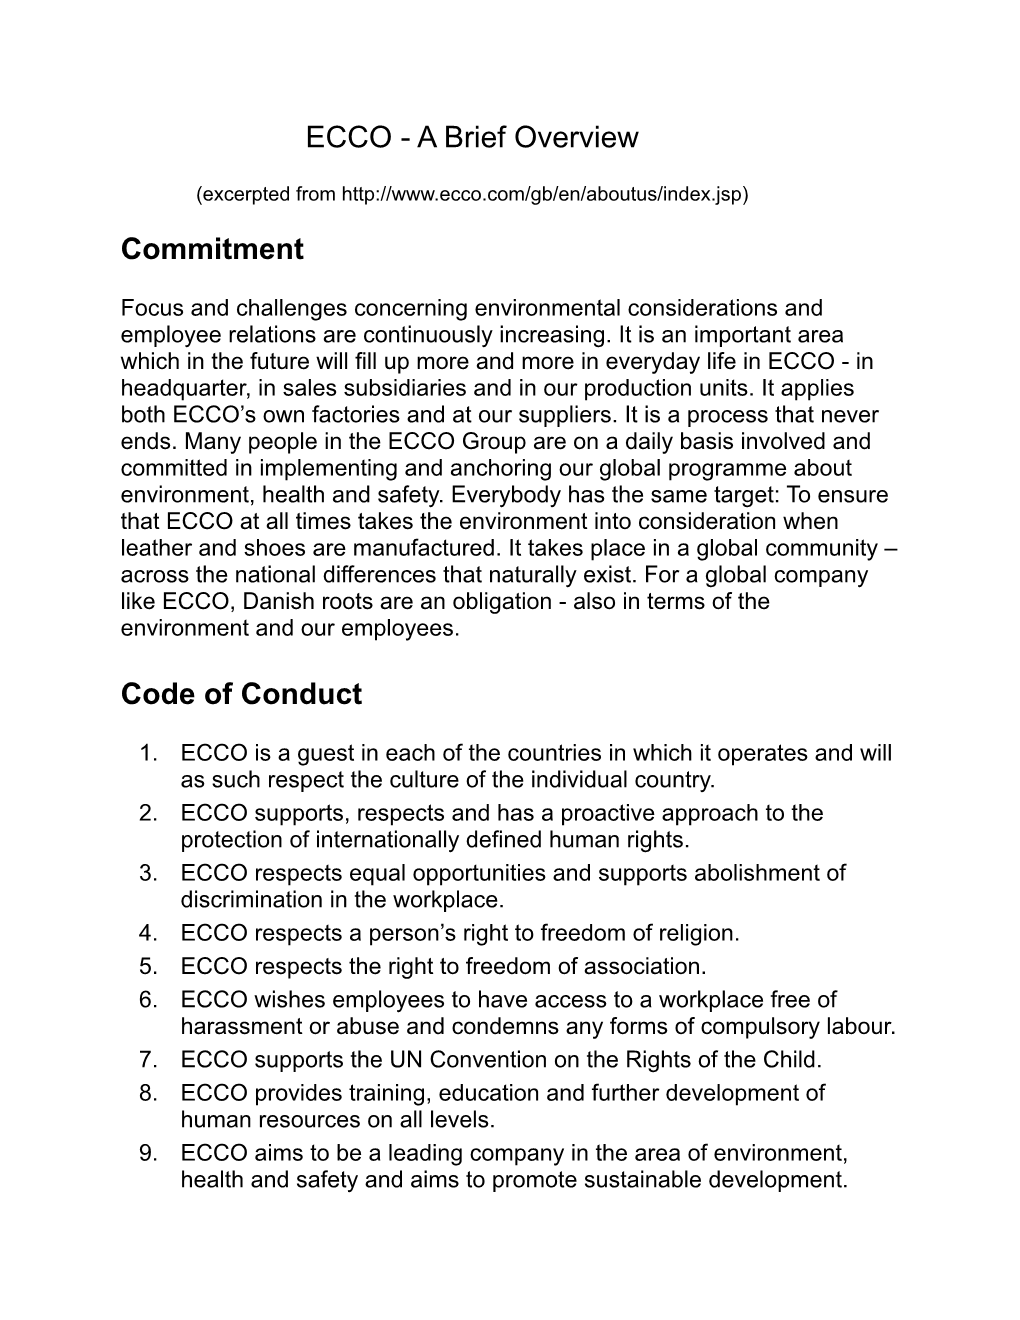 ECCO - a Brief Overview